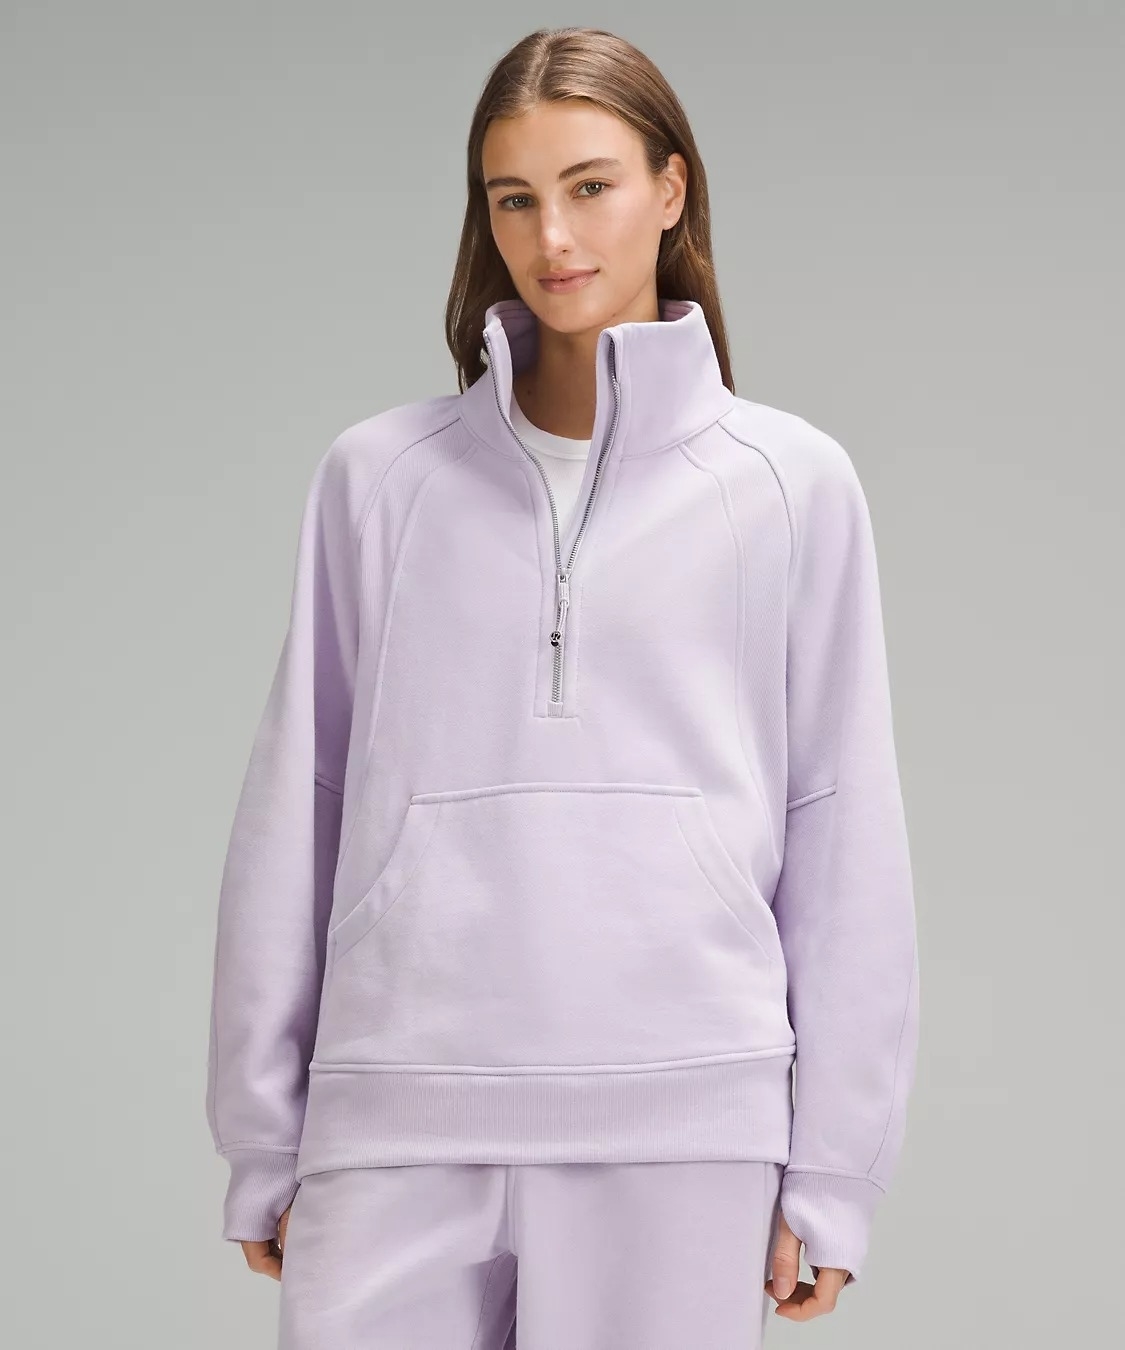 Model wearing light purple funnel-neck sweatshirt